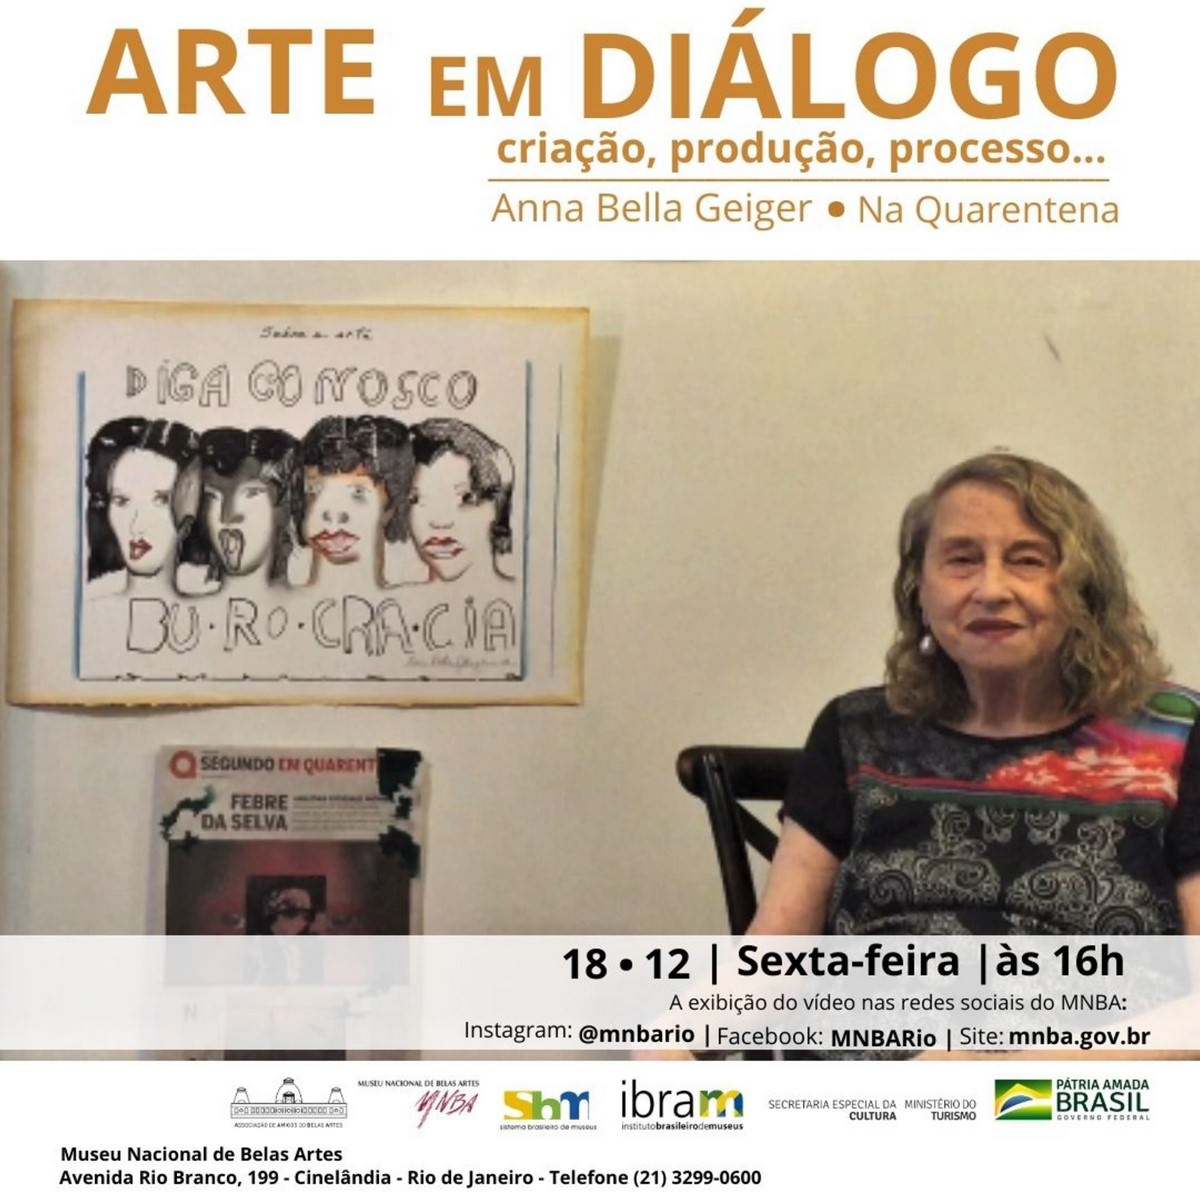 Projeto Arte em Diálogo, na Quarentena, com Annabella Geiger, no MNBA, flyer. Divulgação.